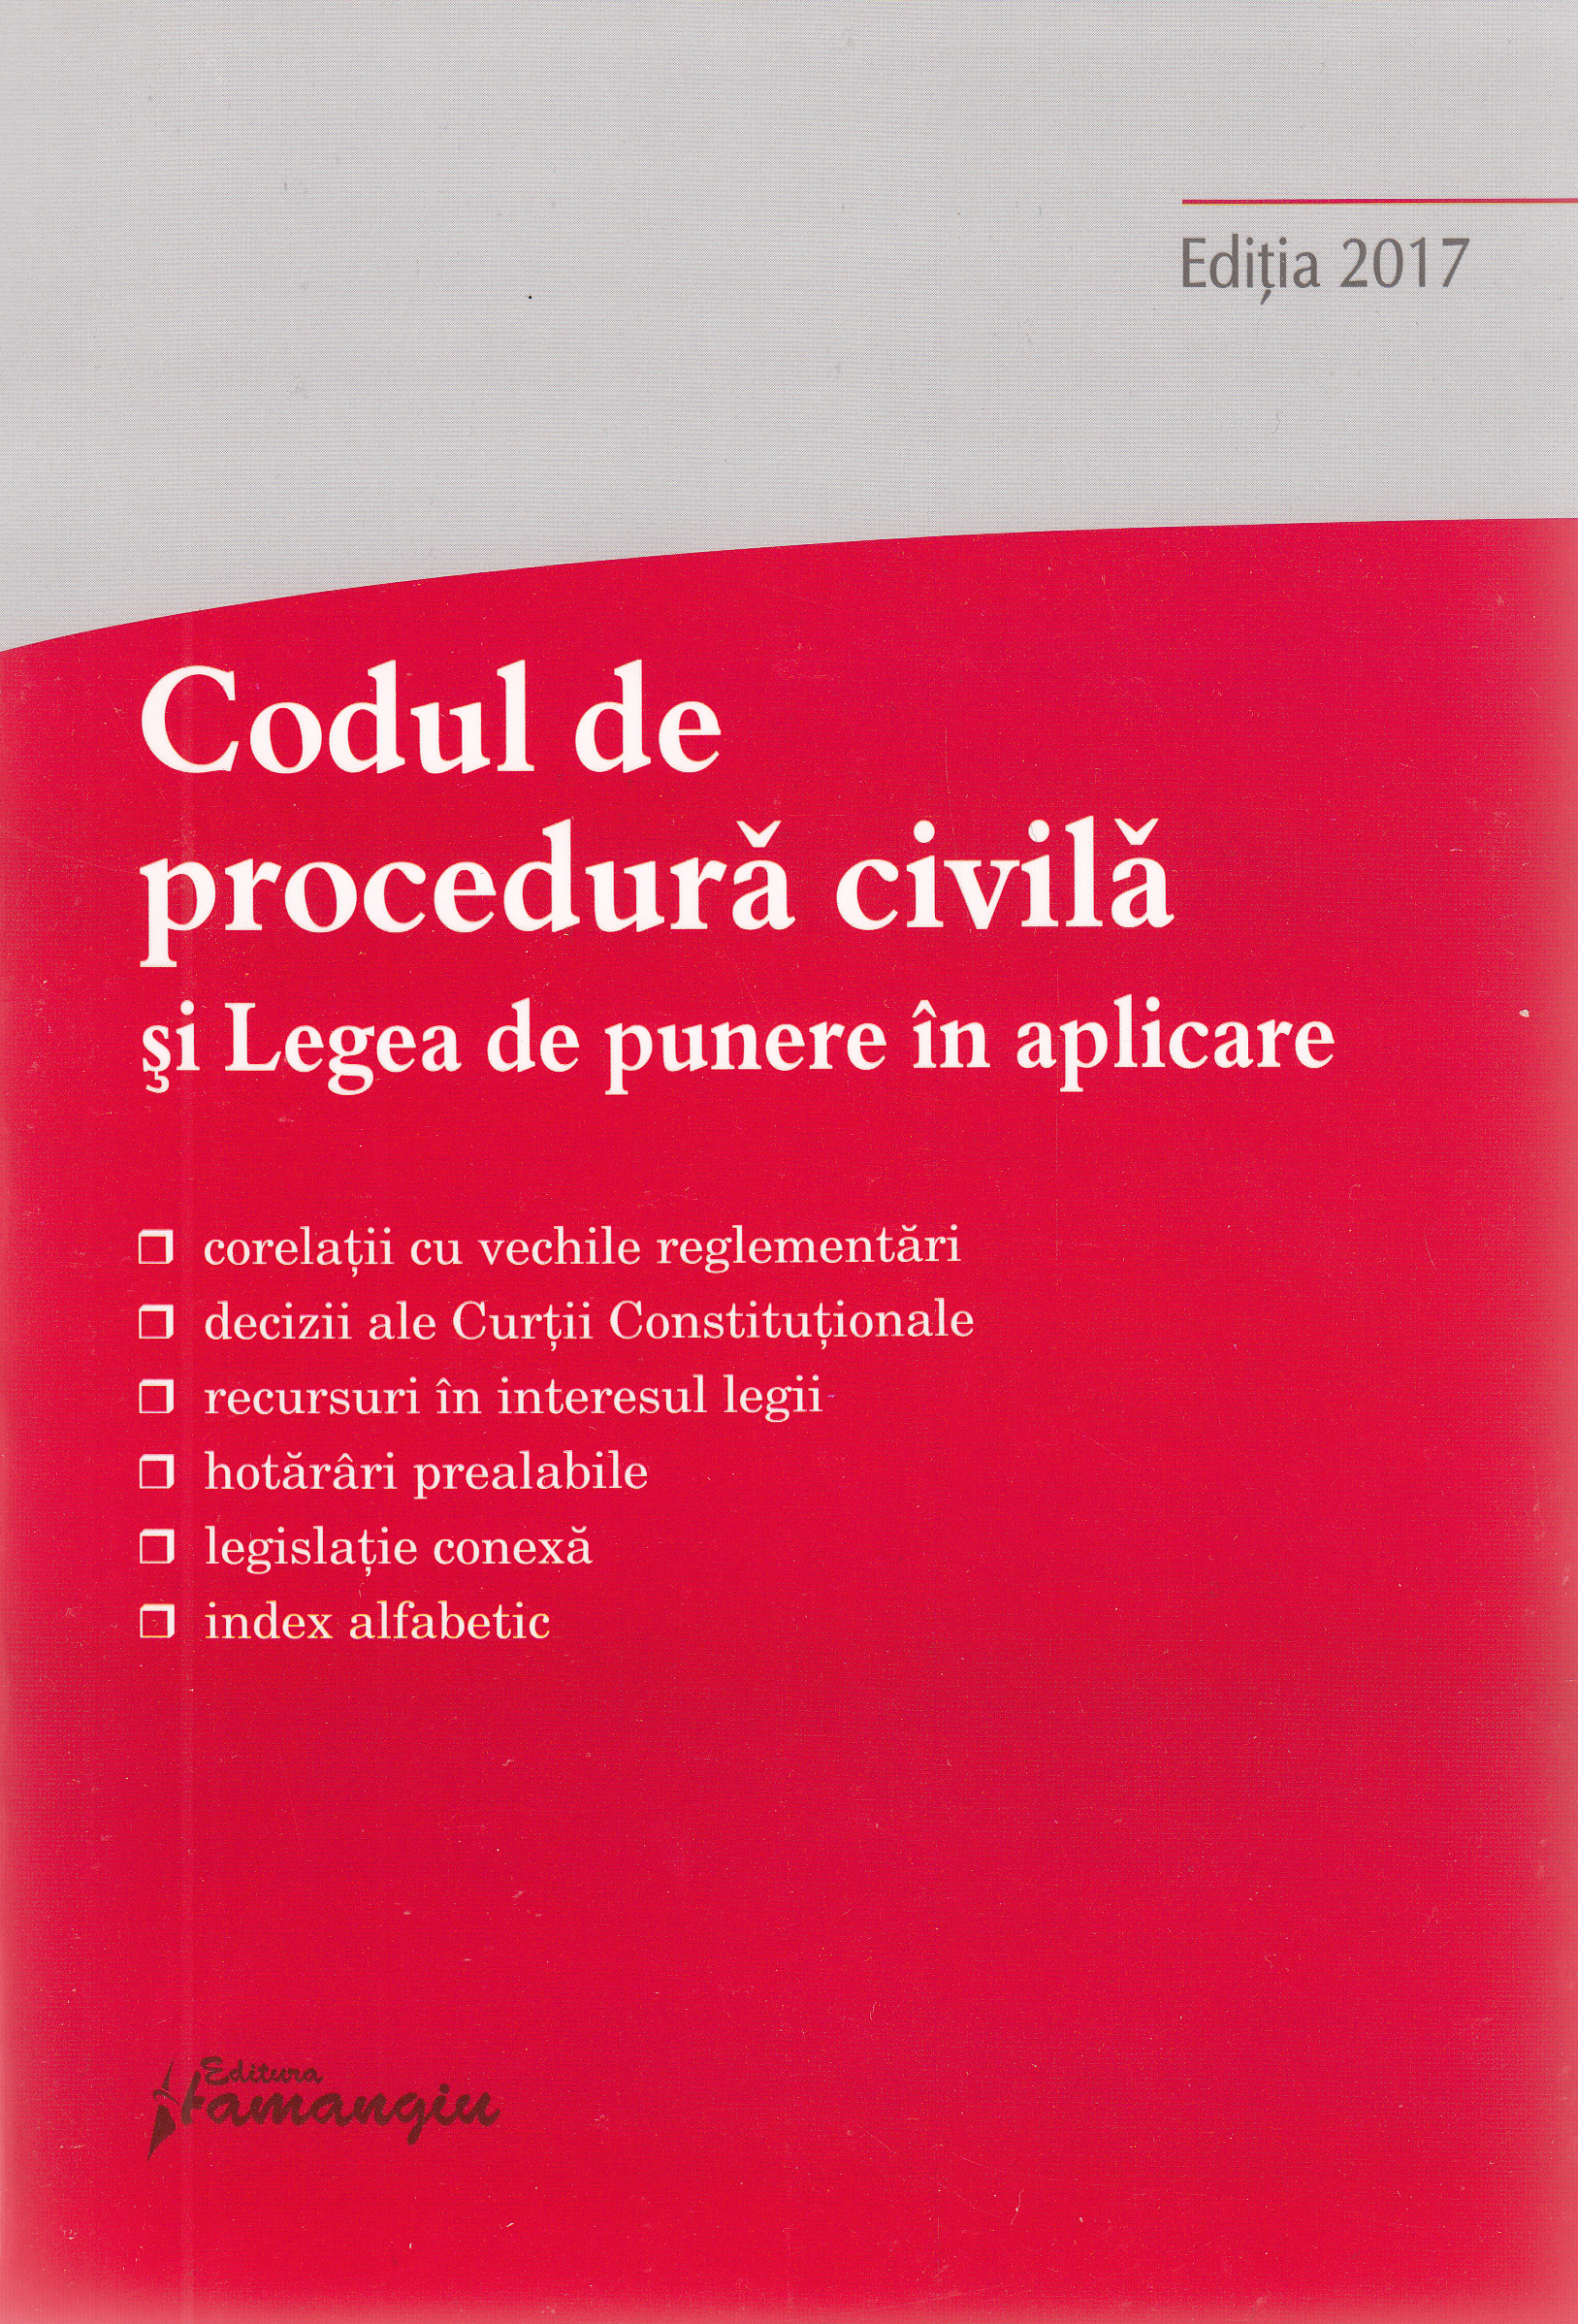 Codul de procedura civila si Legea de punere in aplicare Ed.2017